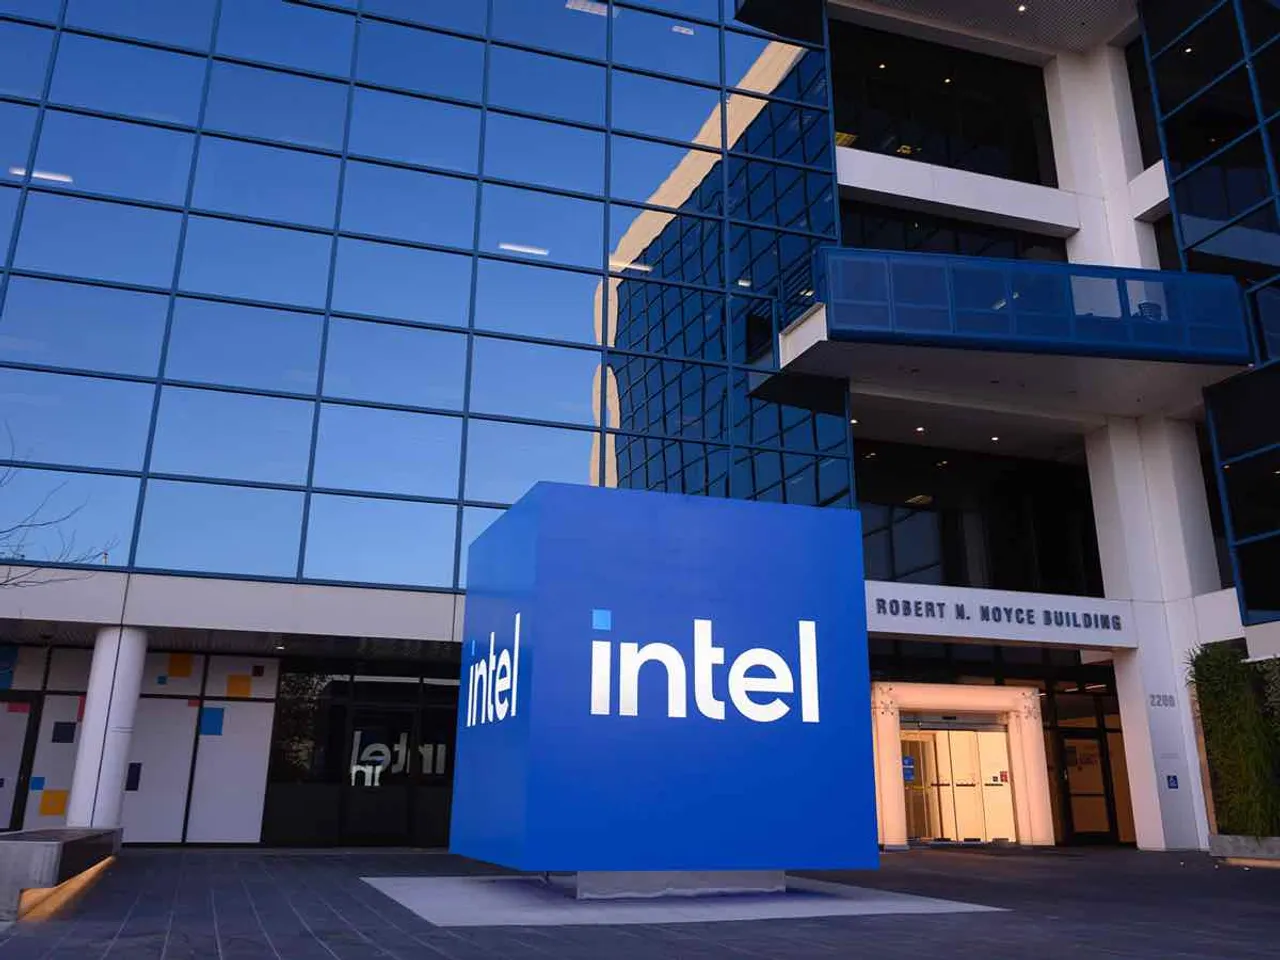 Intel’s $7 Billion Chip Making Loss Signals Industry Shift